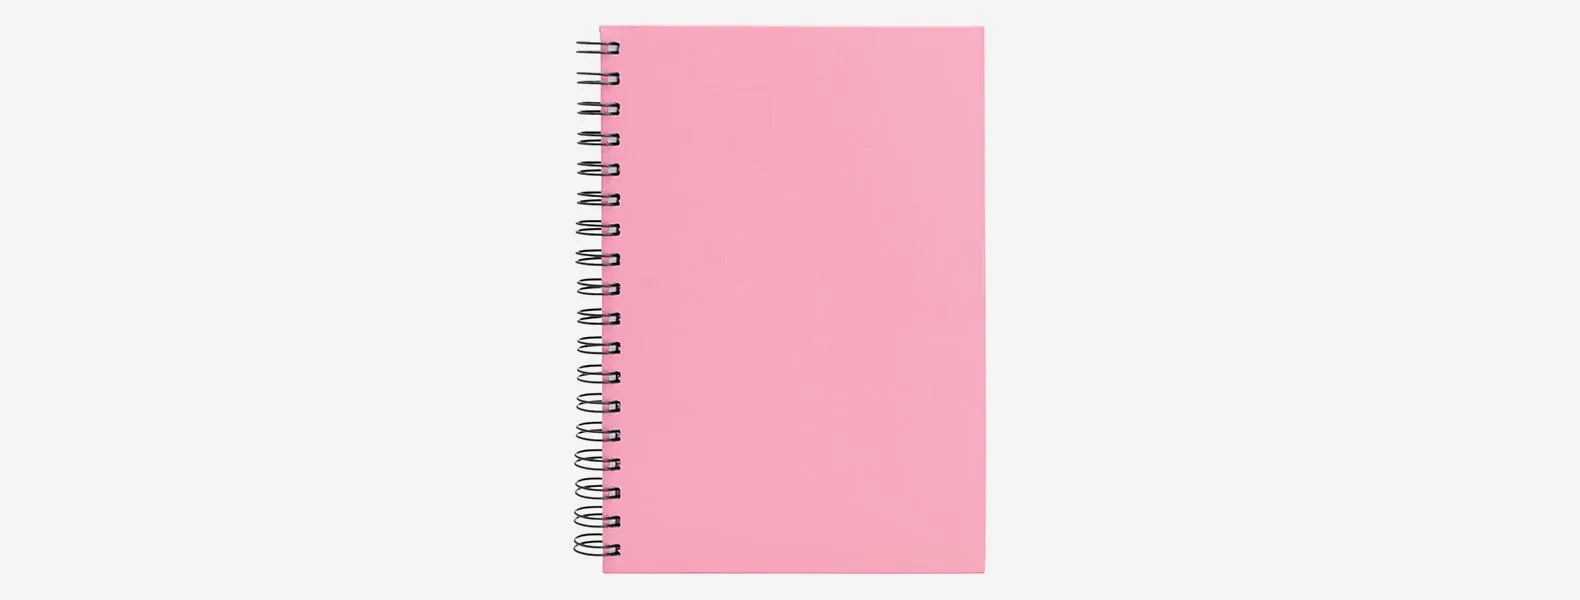 Caderno para anotações wire-o rosa com capa dura revestida em percalux linho. Conta com folha para dados pessoais, calendário e 100 folhas pautadas. Gramatura da folha de 70 g/m2